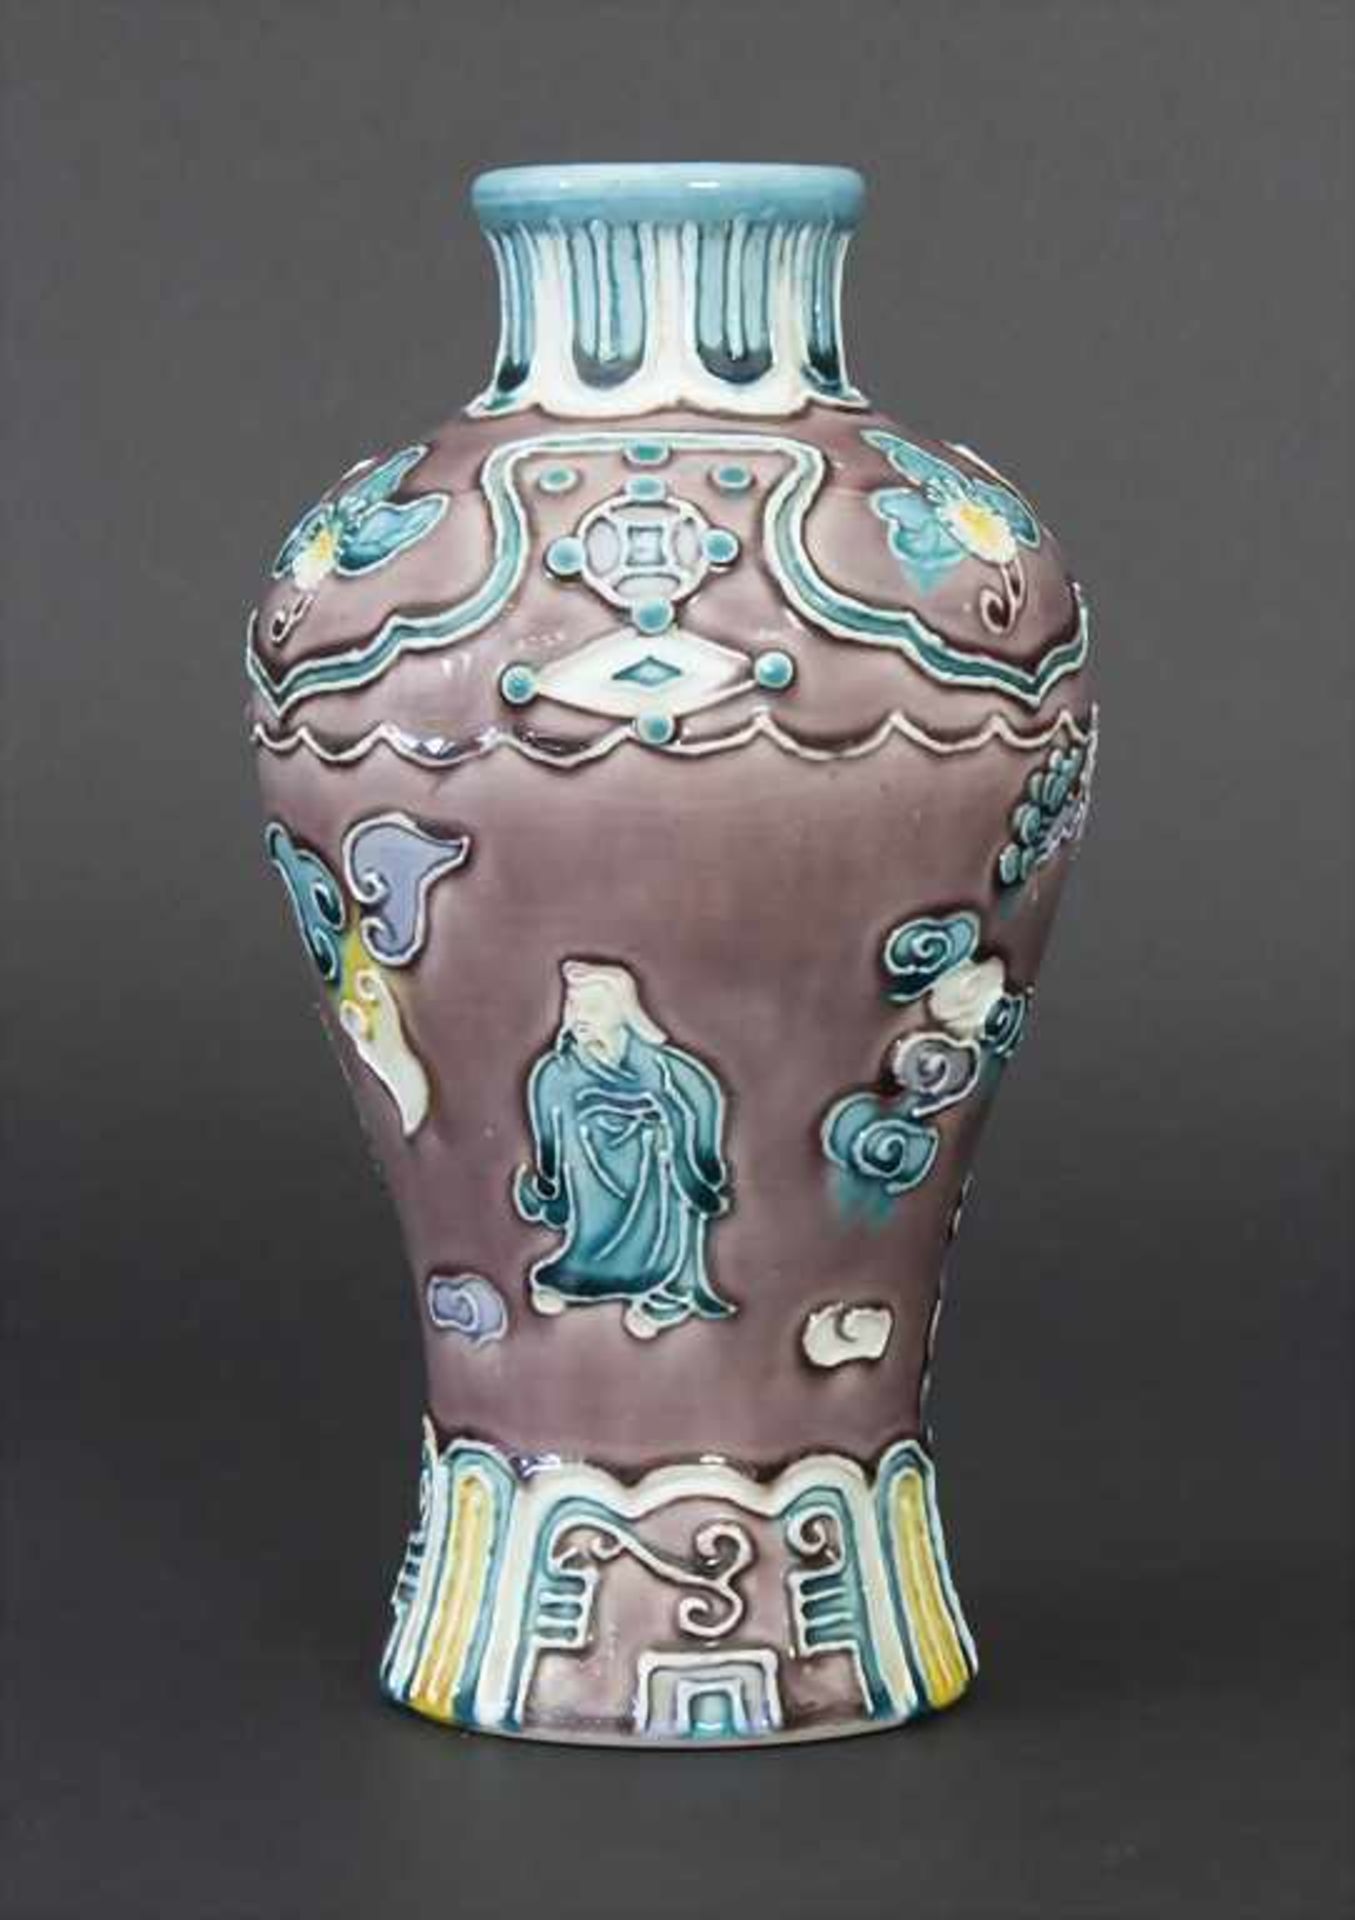 Fahua-Vase, China, wohl 18./19. Jh.Material: Bisquitporzellan, Auflagen in Fahuatechnik, polychrom - Bild 3 aus 7